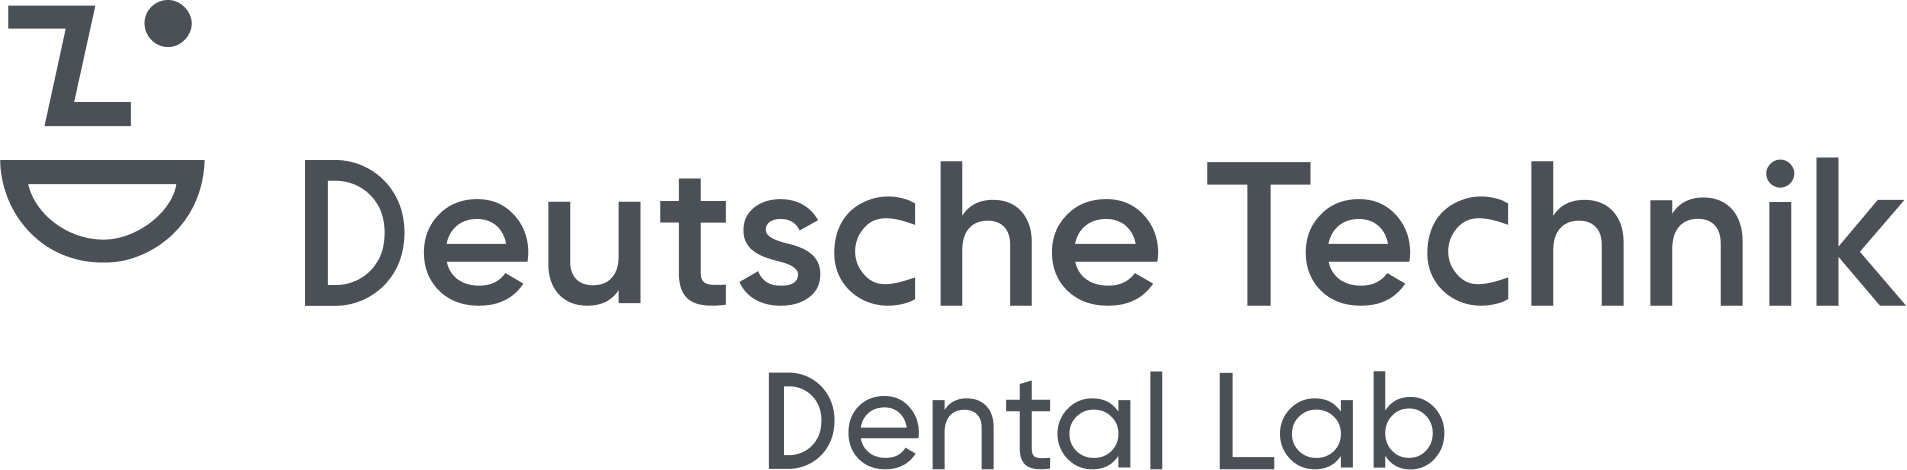 Deutsche Technik Dental Lab